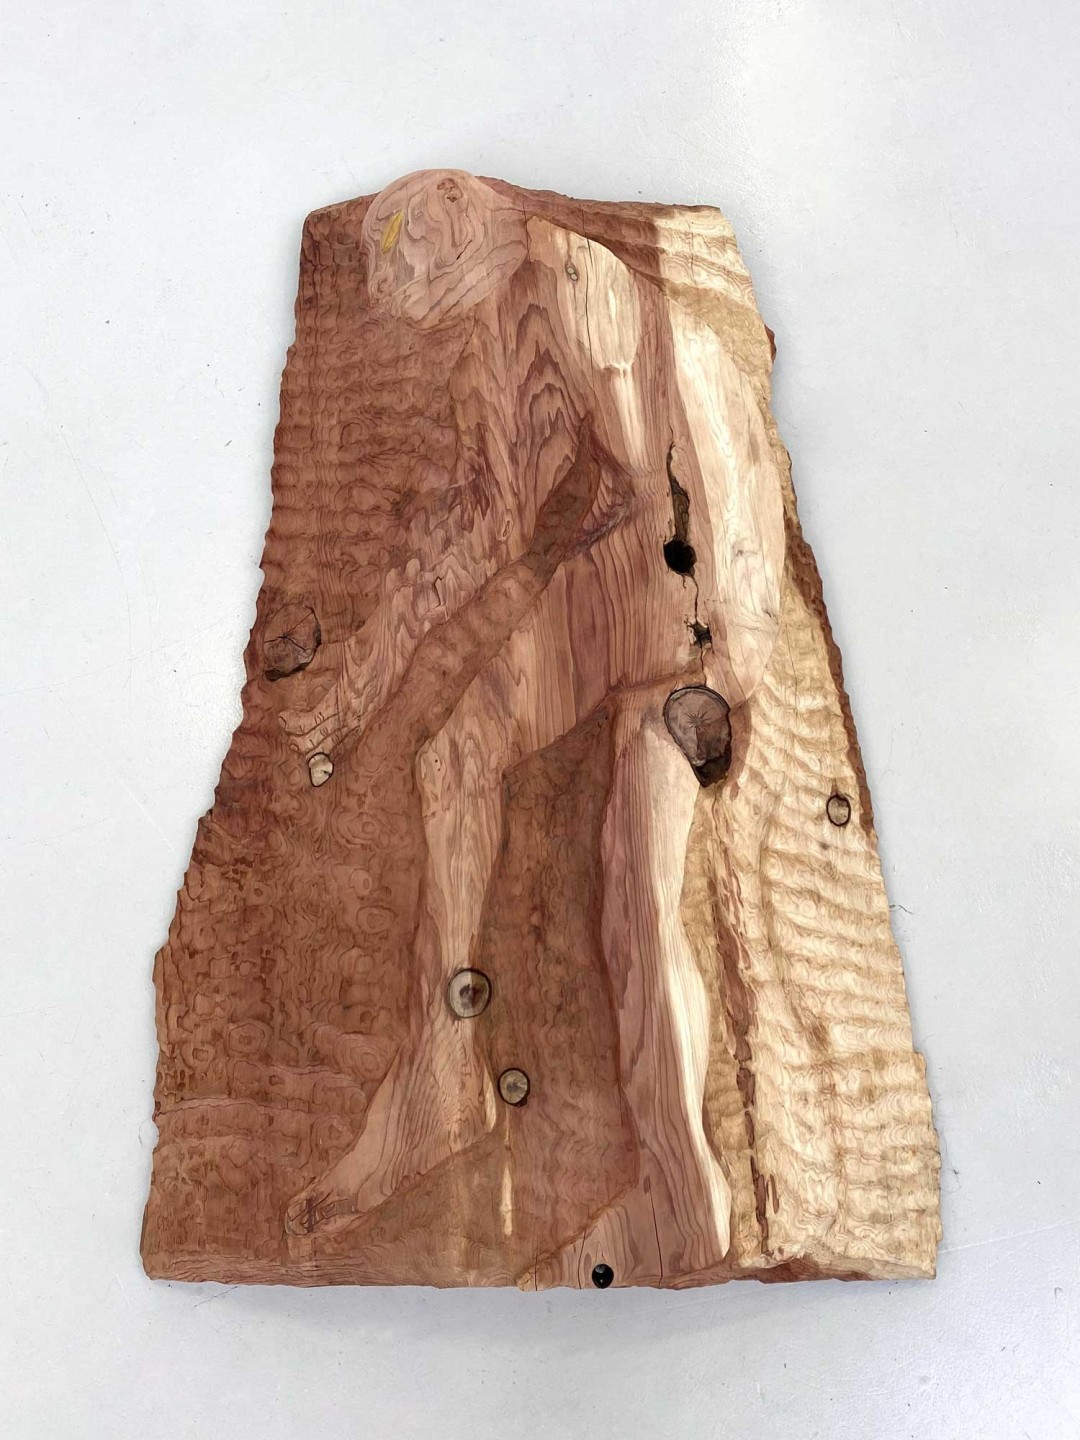 Bois de séquoia de 130 centimètres de haut pour 85 centimètres de large. Dans le bois est sculpté une figure humaine cueillant une fleur.